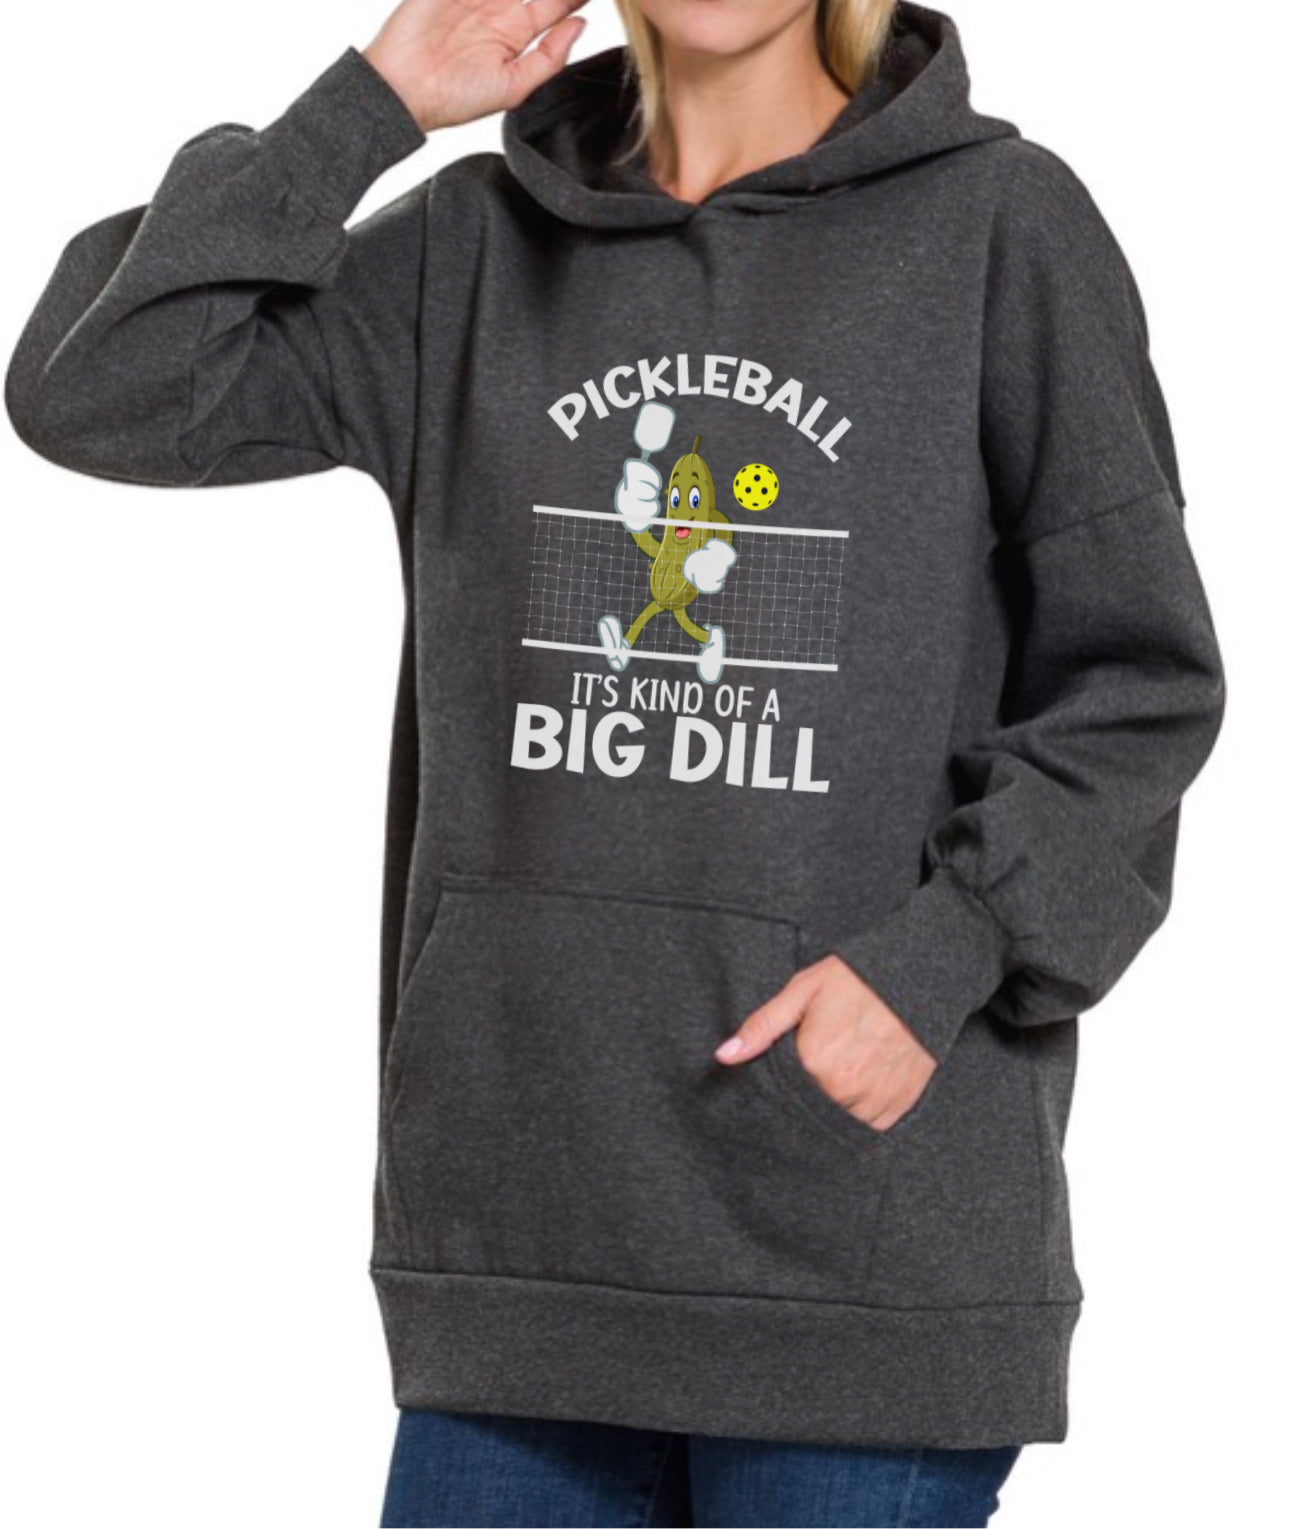 Pickleball -Big Dill